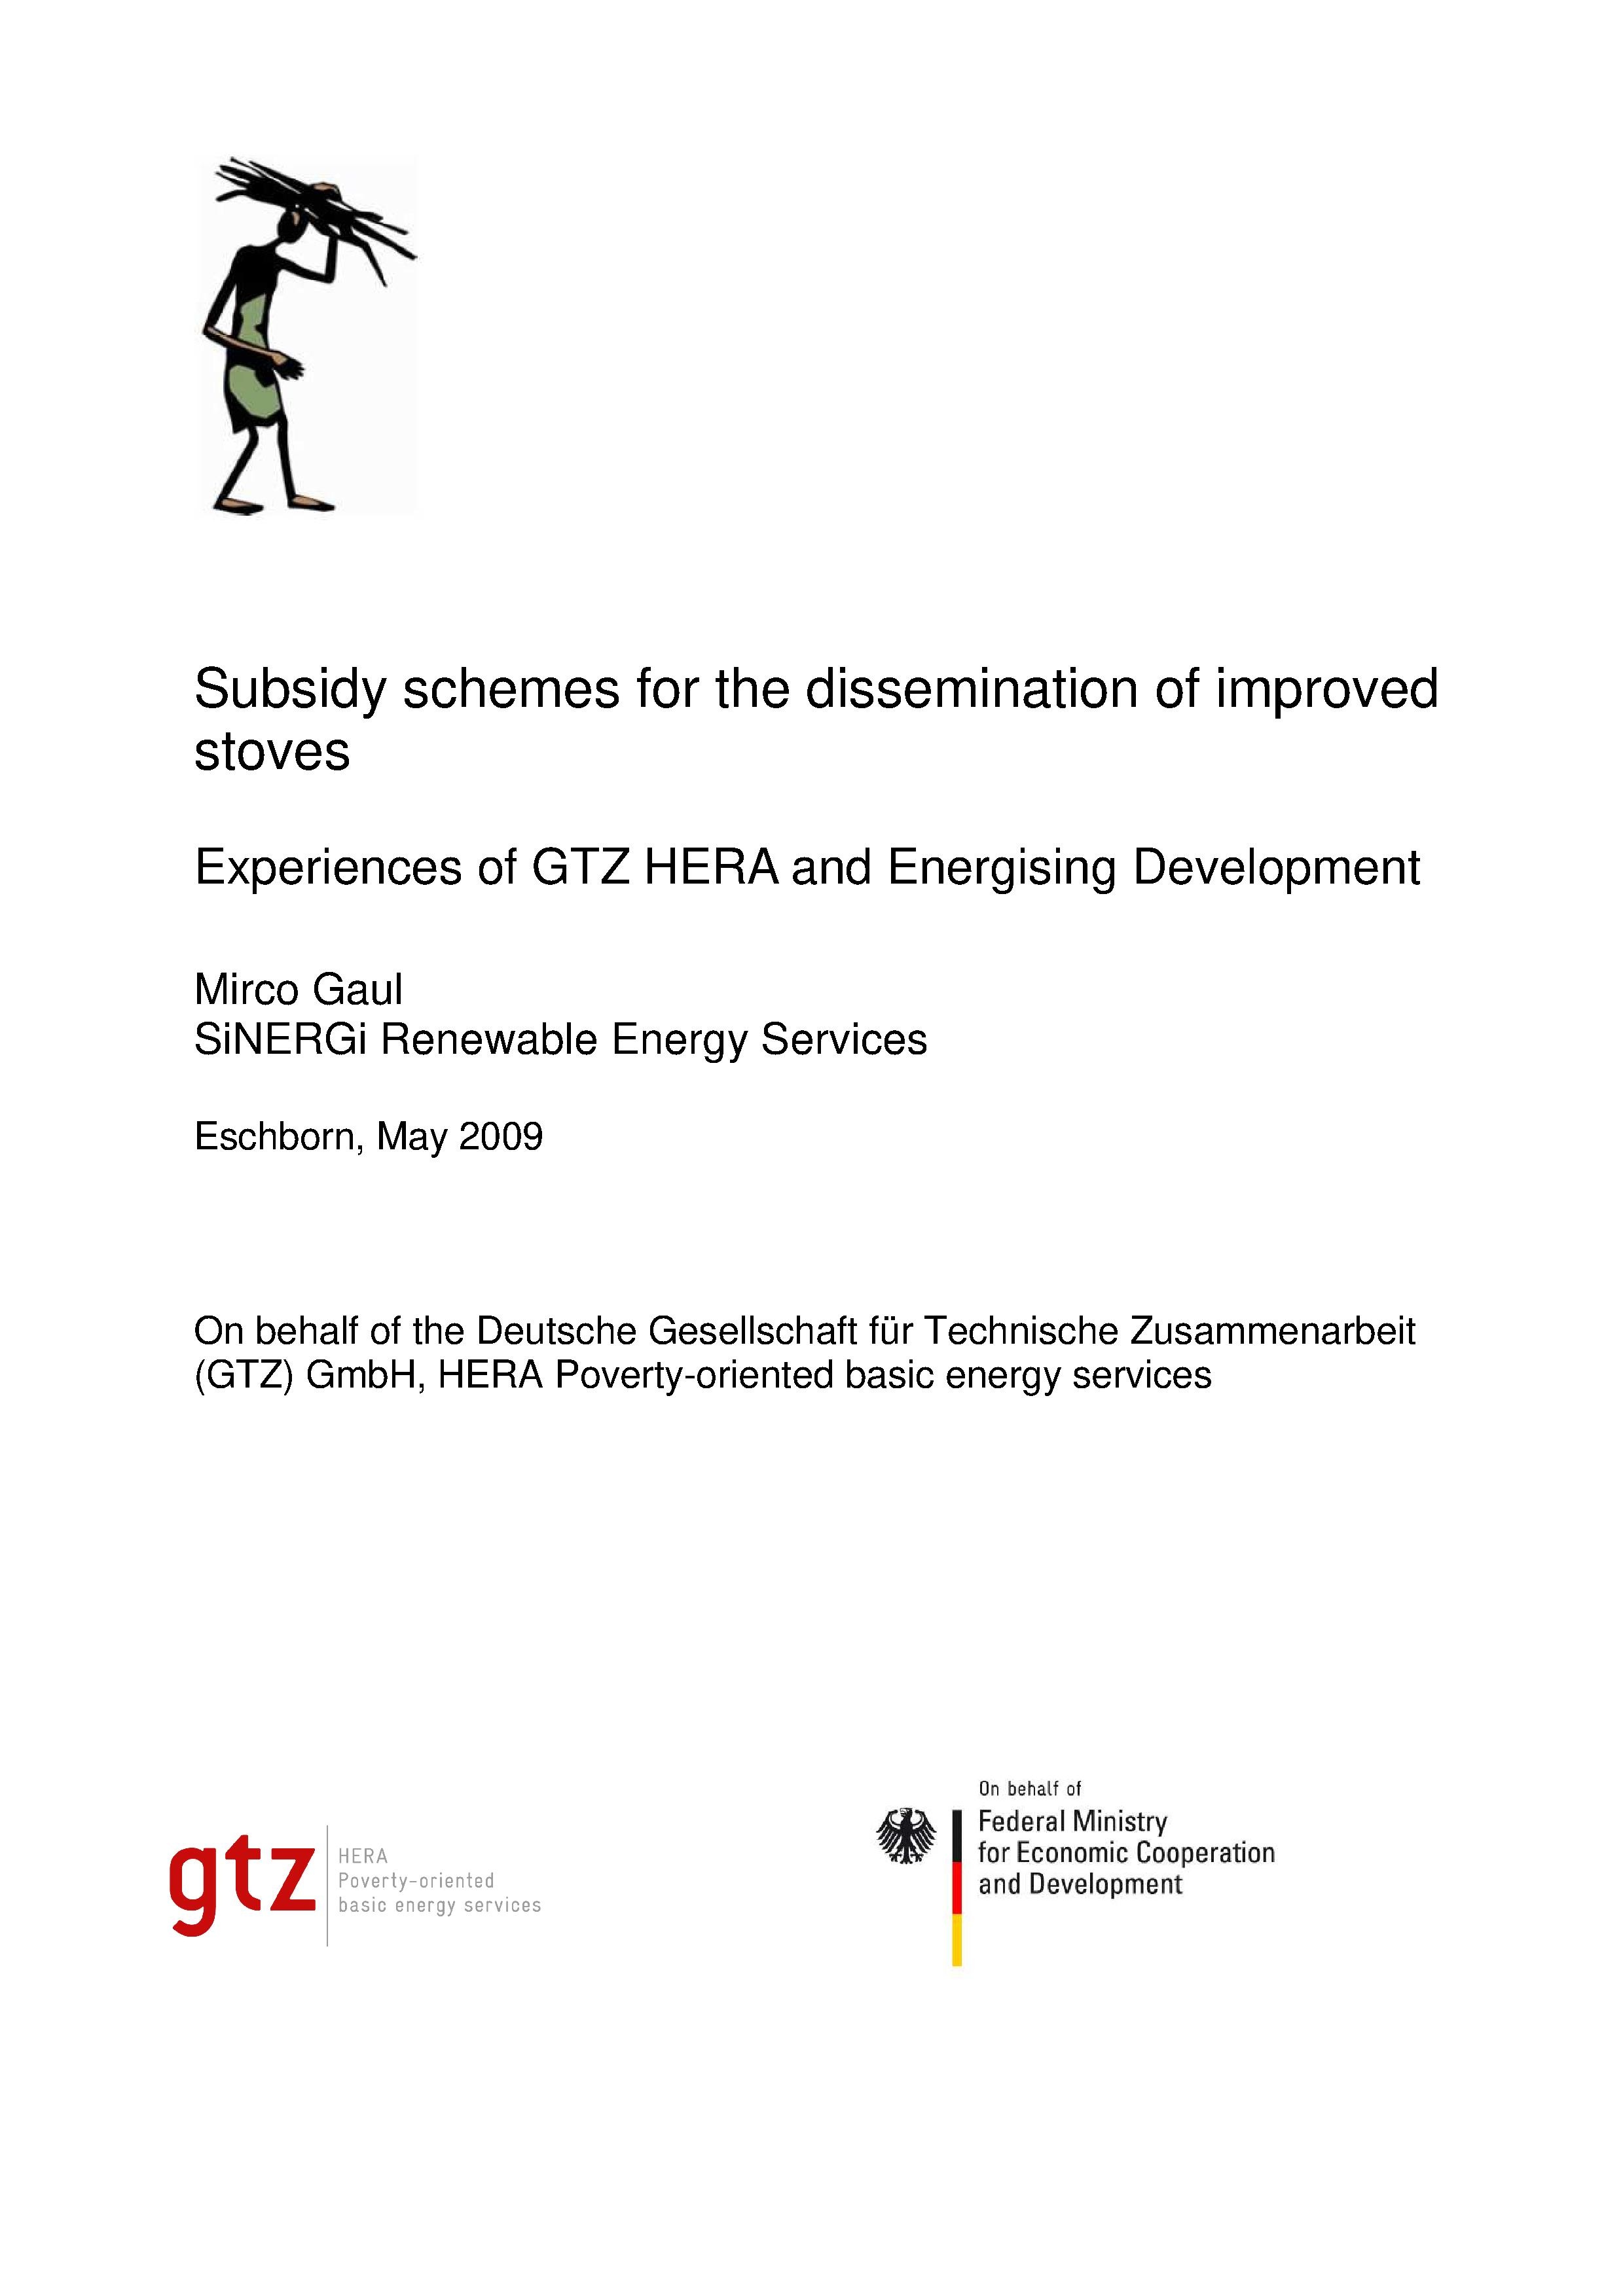 File:Stove subsidies-gtz-2009.pdf